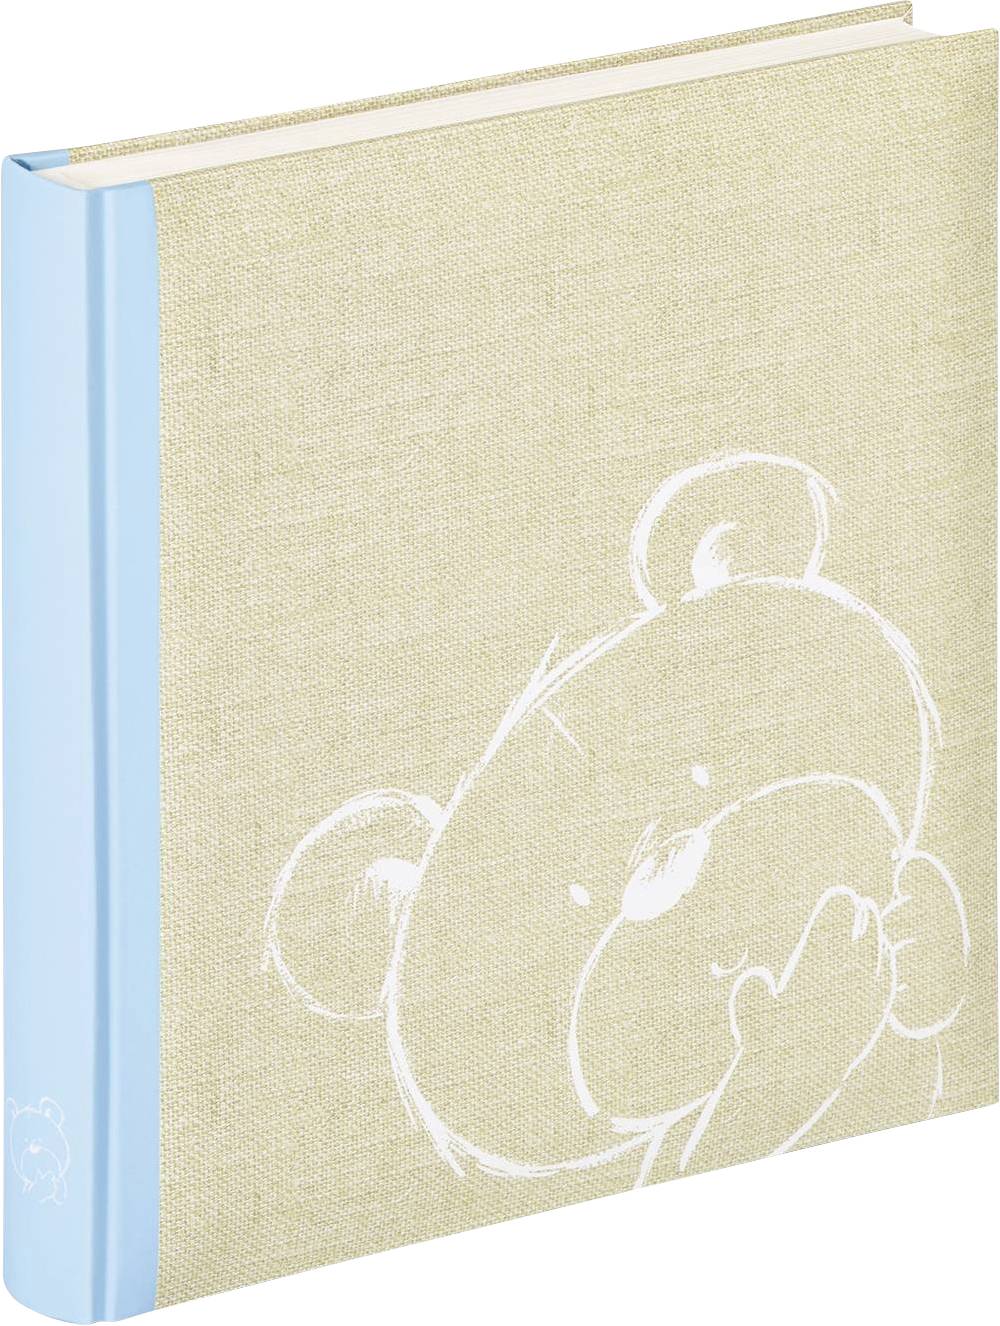 WALTHER Dreamtime blau   28x30,5 50 Seiten Baby Buch       UK151L